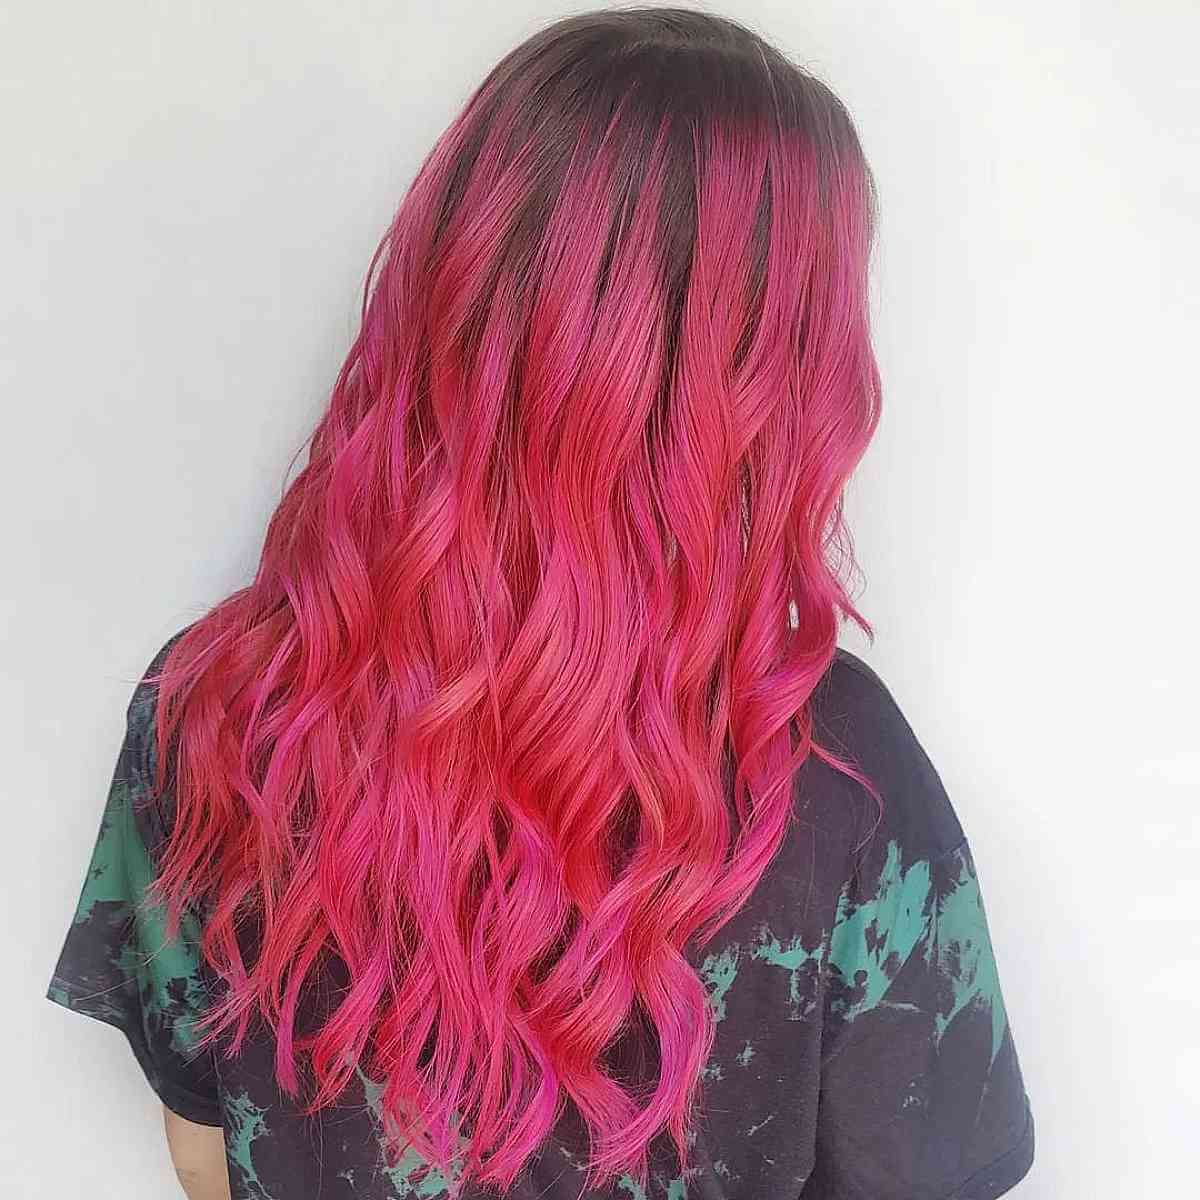 Summertime Hot Pink Balayage on Dark Hair